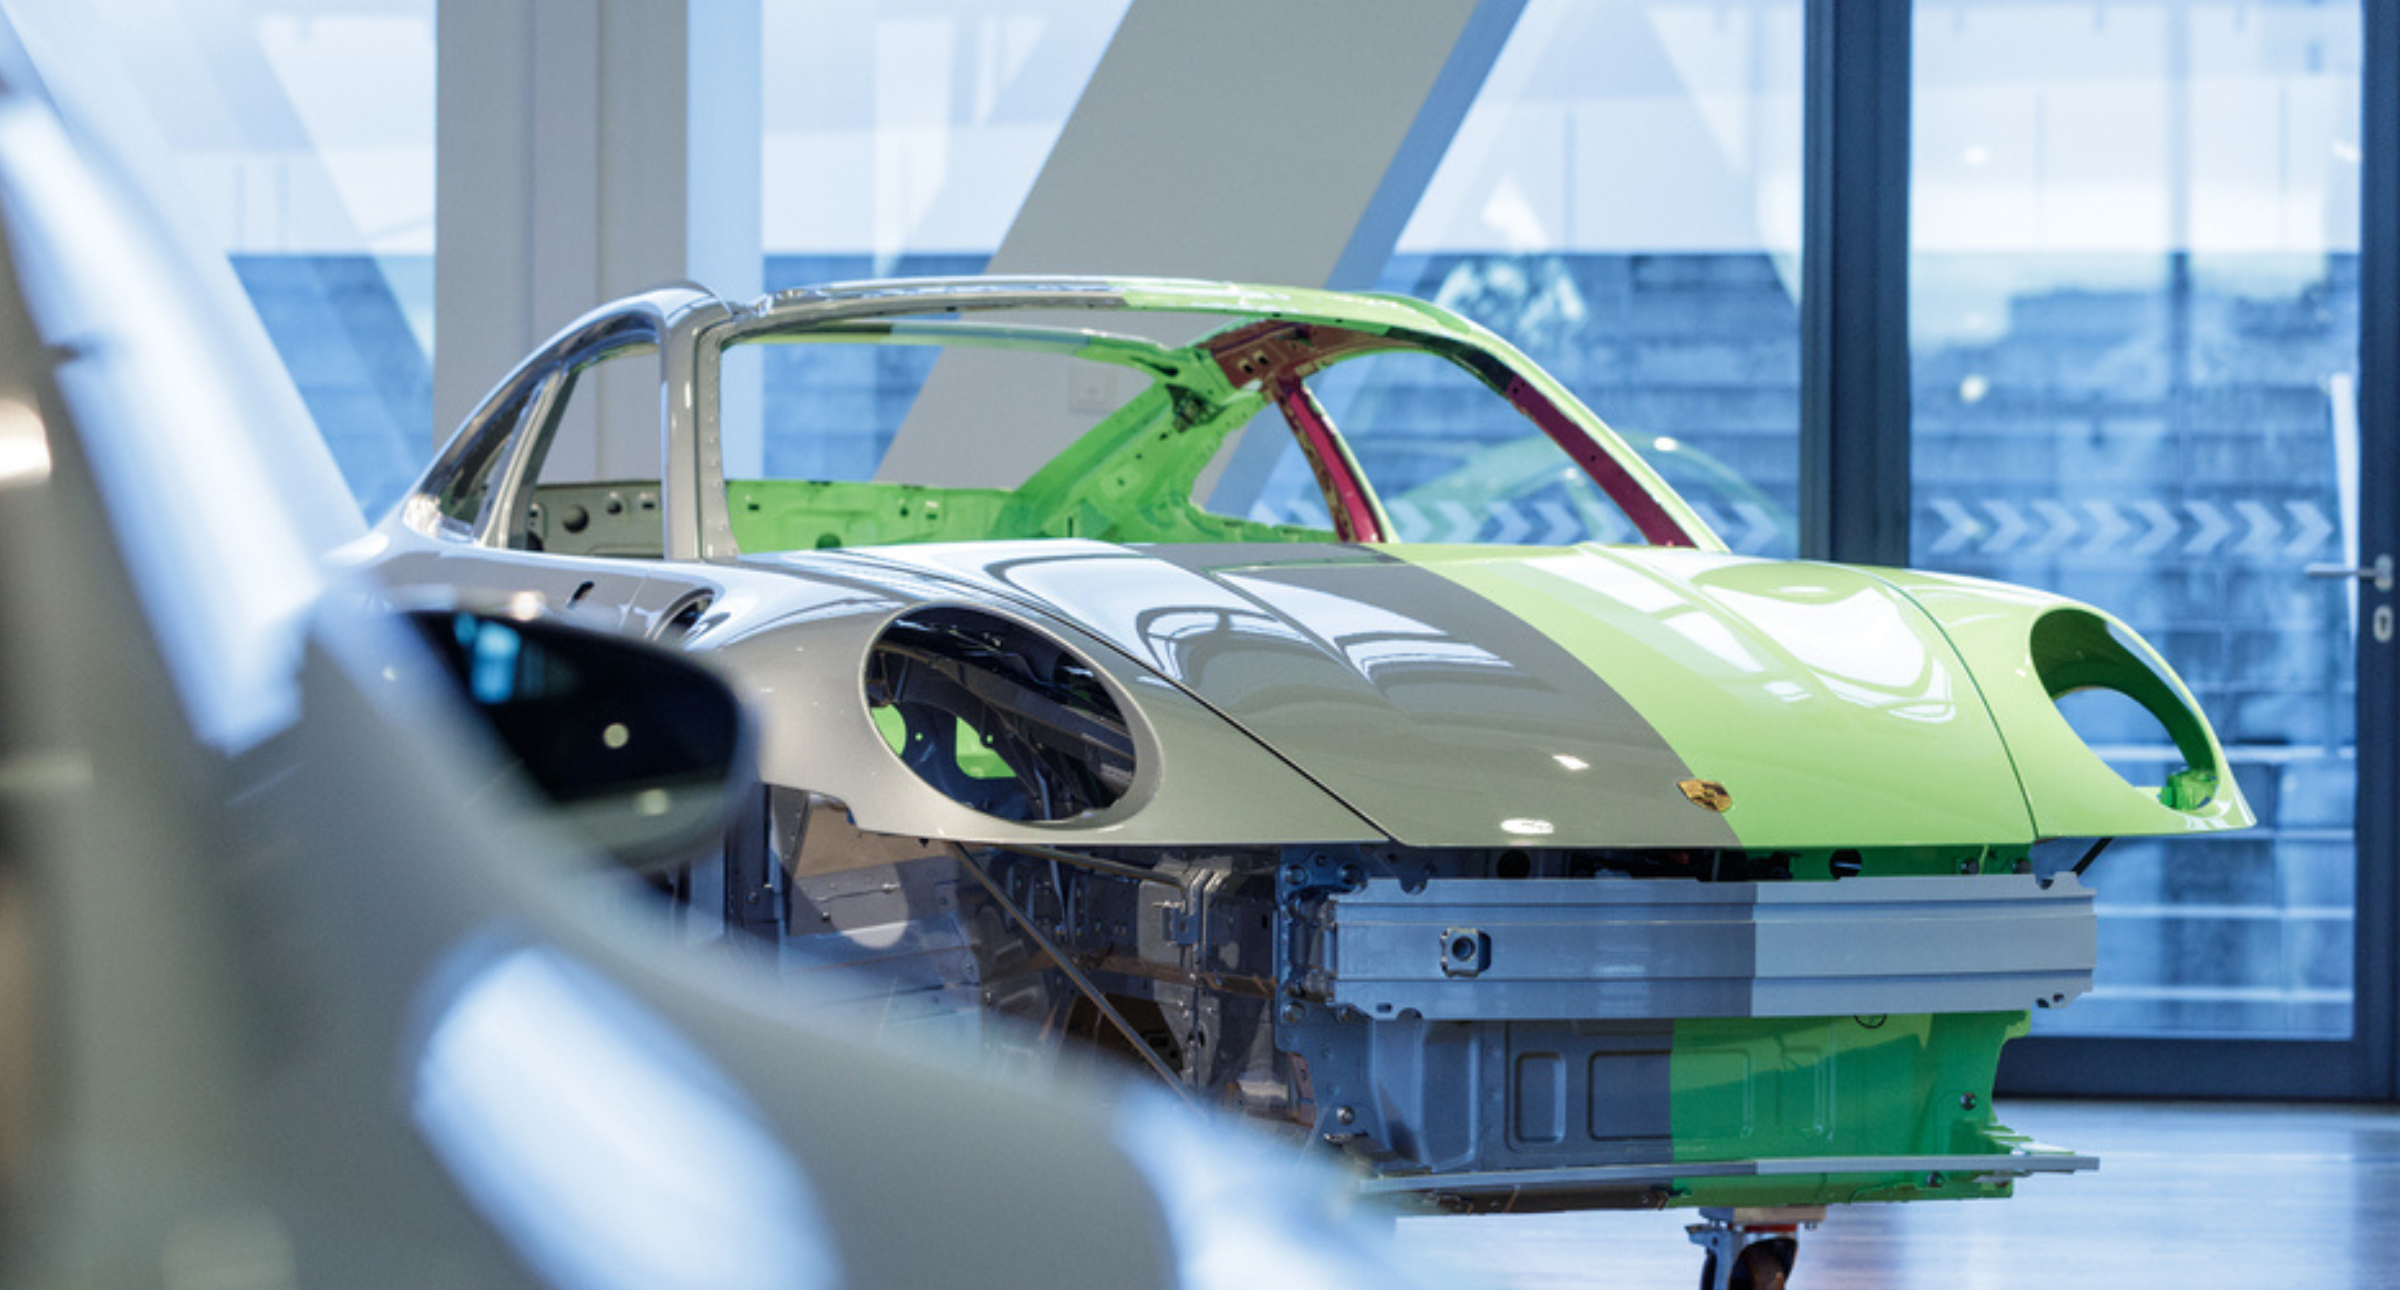 【#Energy】Porsche 將採用低排碳鋼為材，目標節能減碳為永續環境盡心力